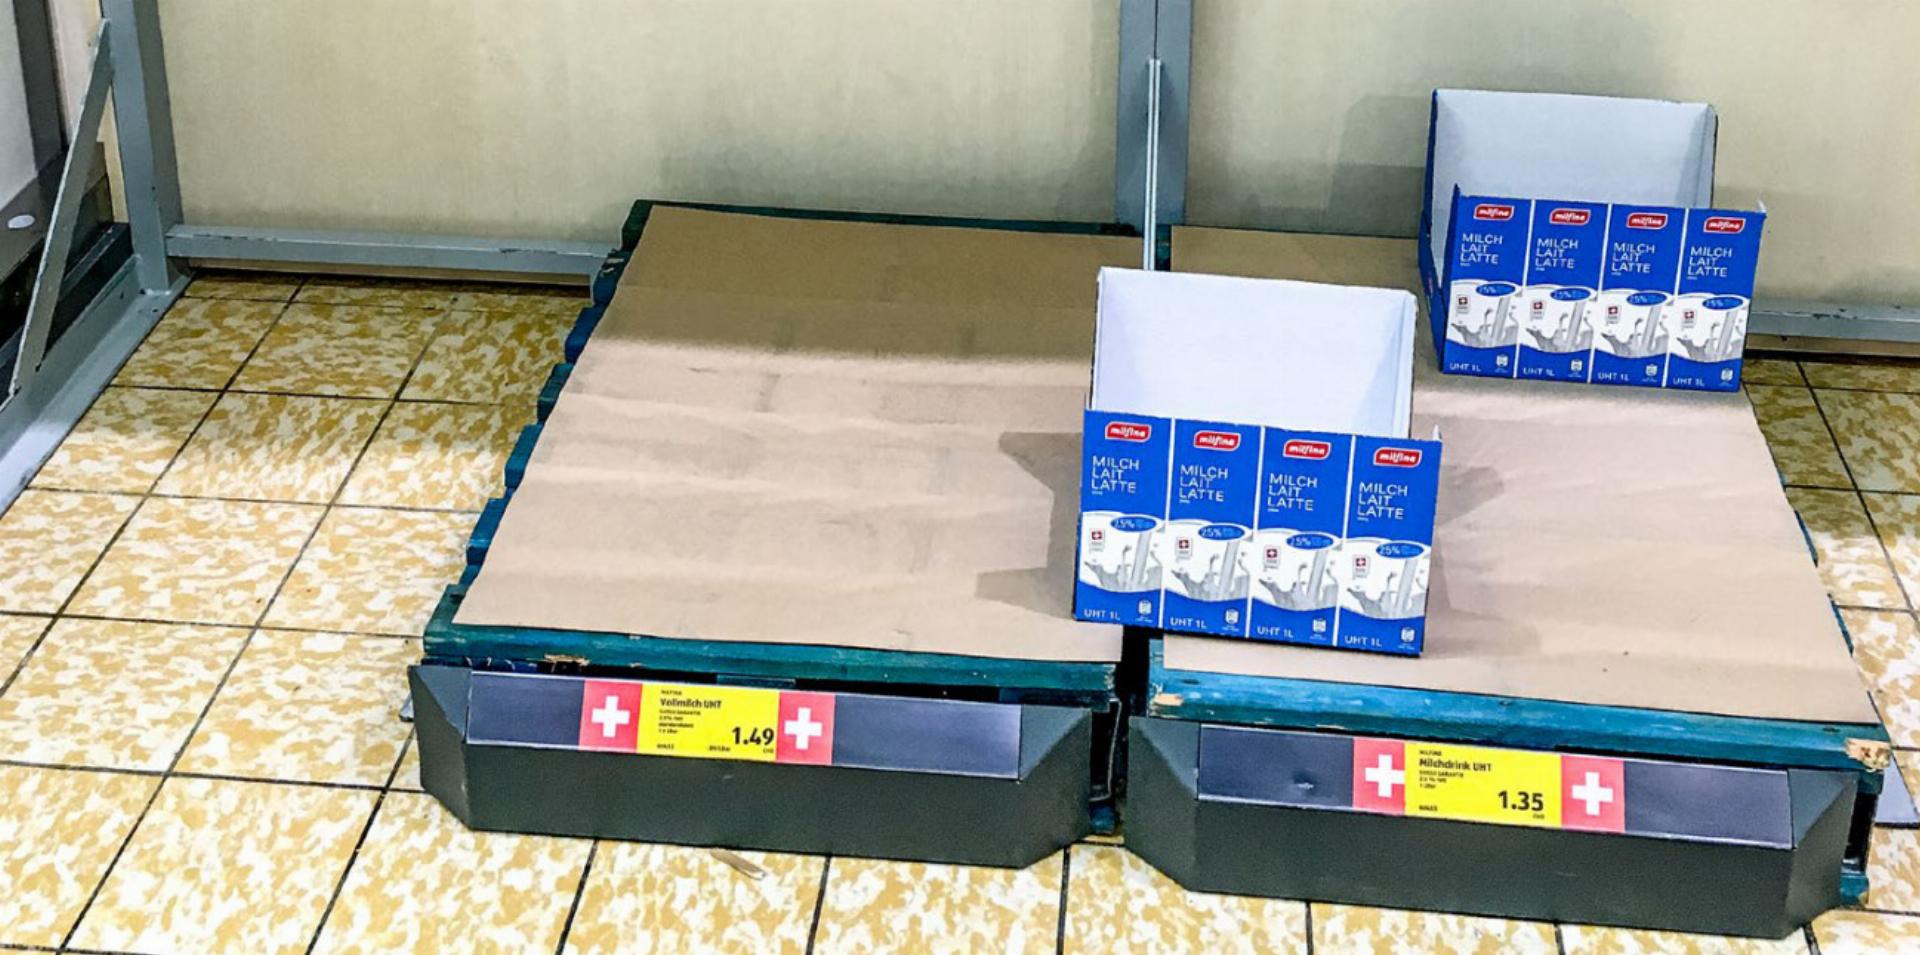 Ein leeres Milchregal in einem Supermarkt im März 2020. BILD: MARK POLLMEIER